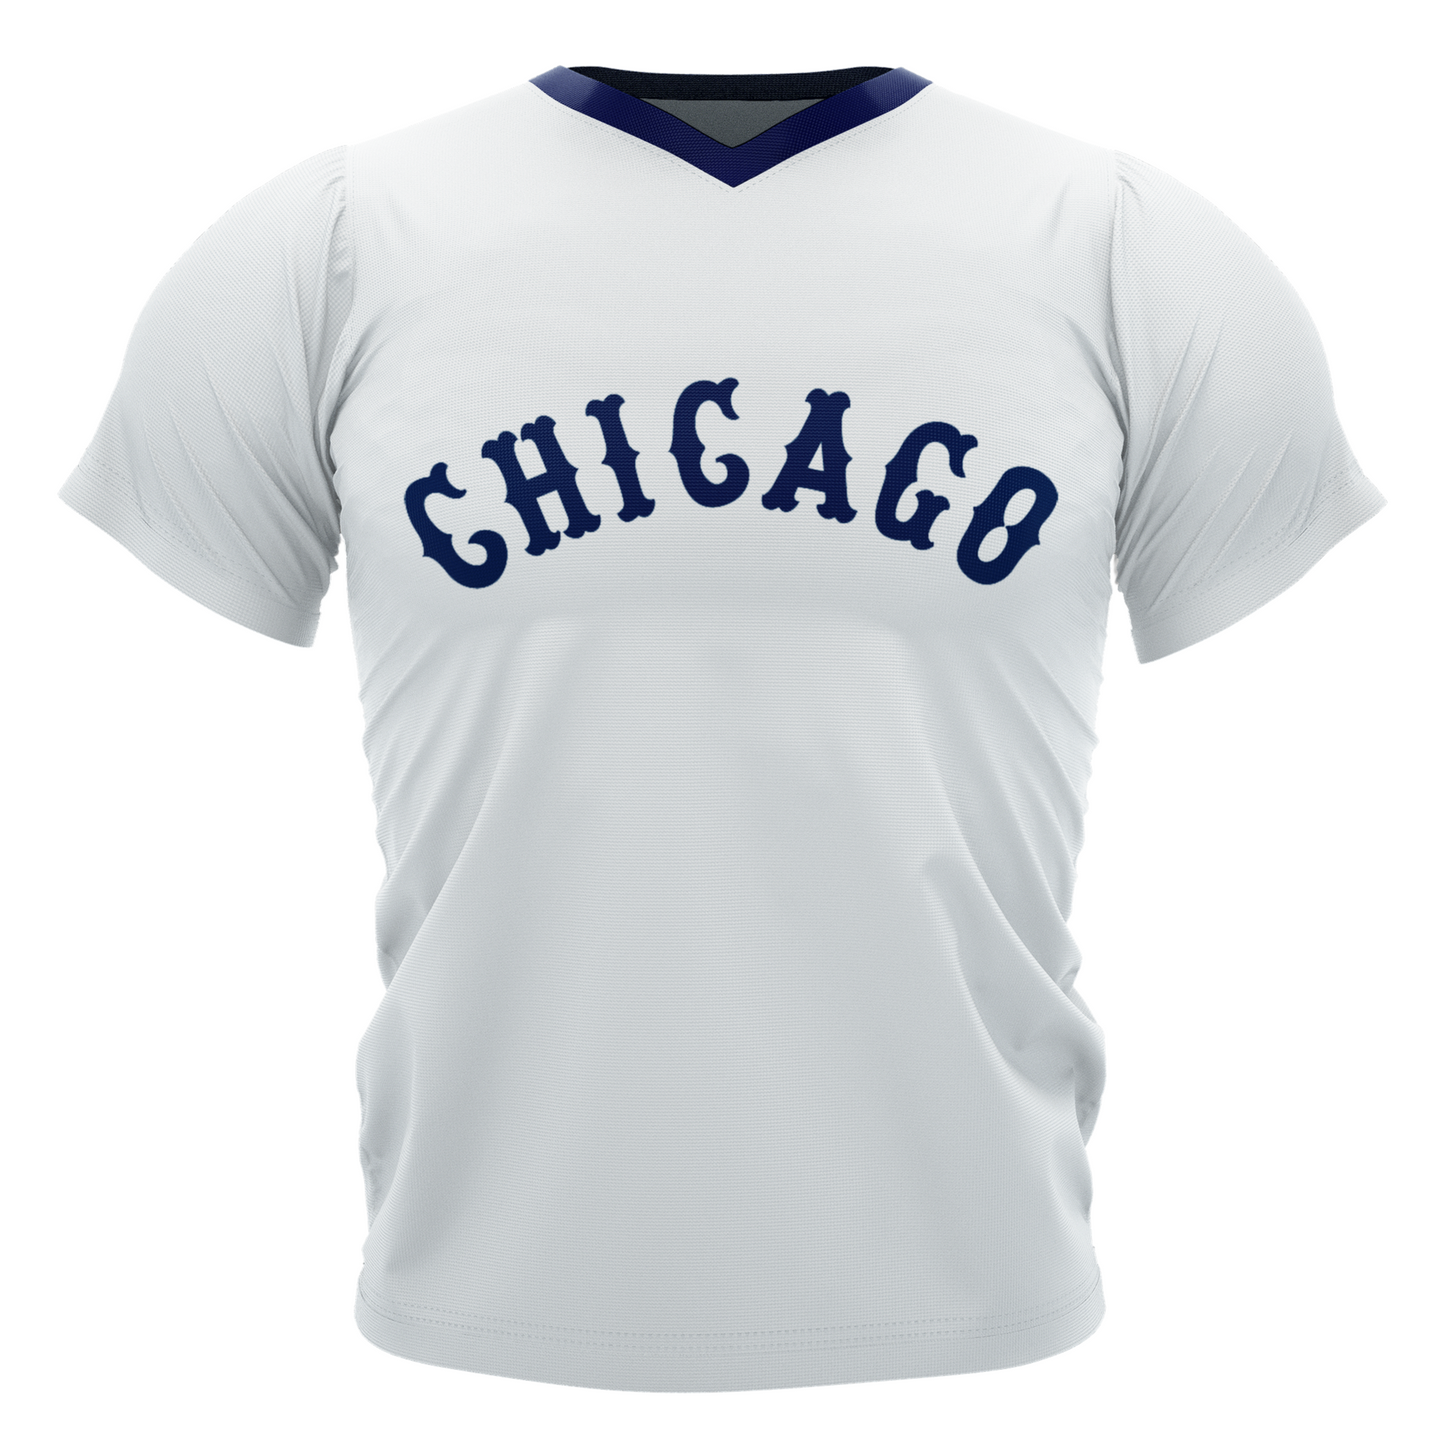 Chicago White Sox shorts (1976)  Chicago white sox, White sox